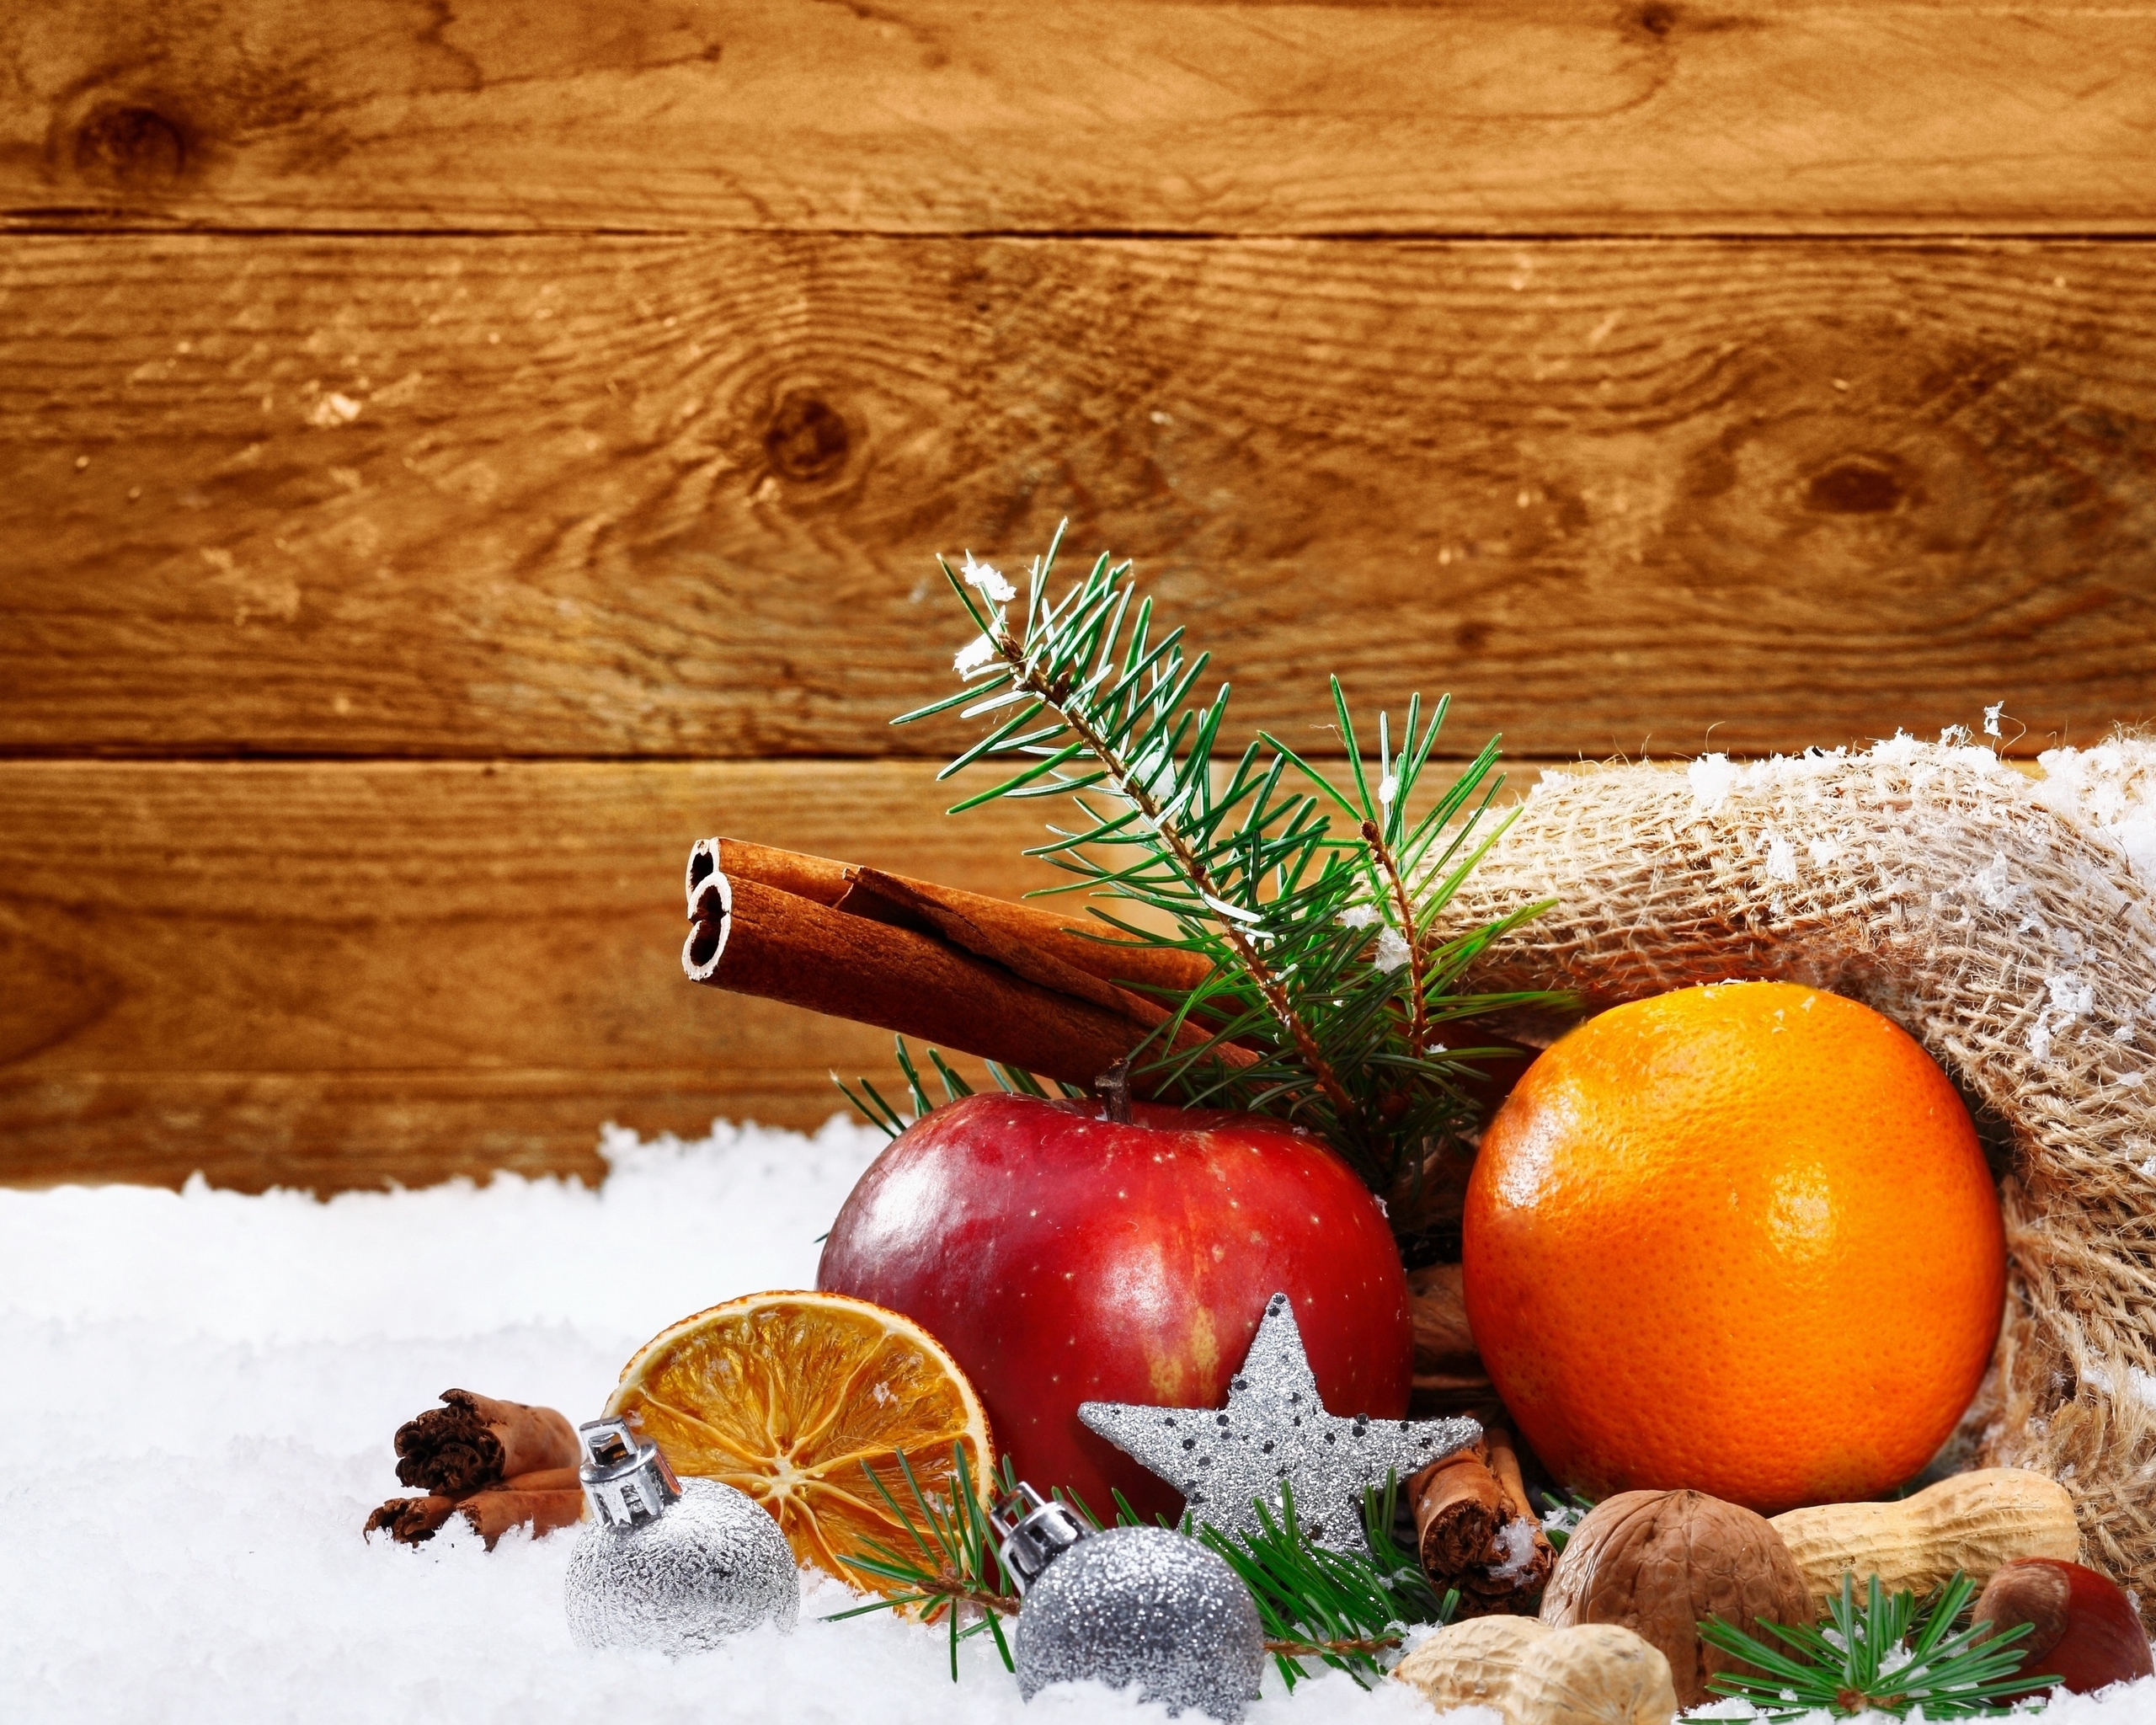 Картинка: Апельсин, яблоко, корица, звёздочка, ёлочные игрушки, веточка, ель, декор, снег